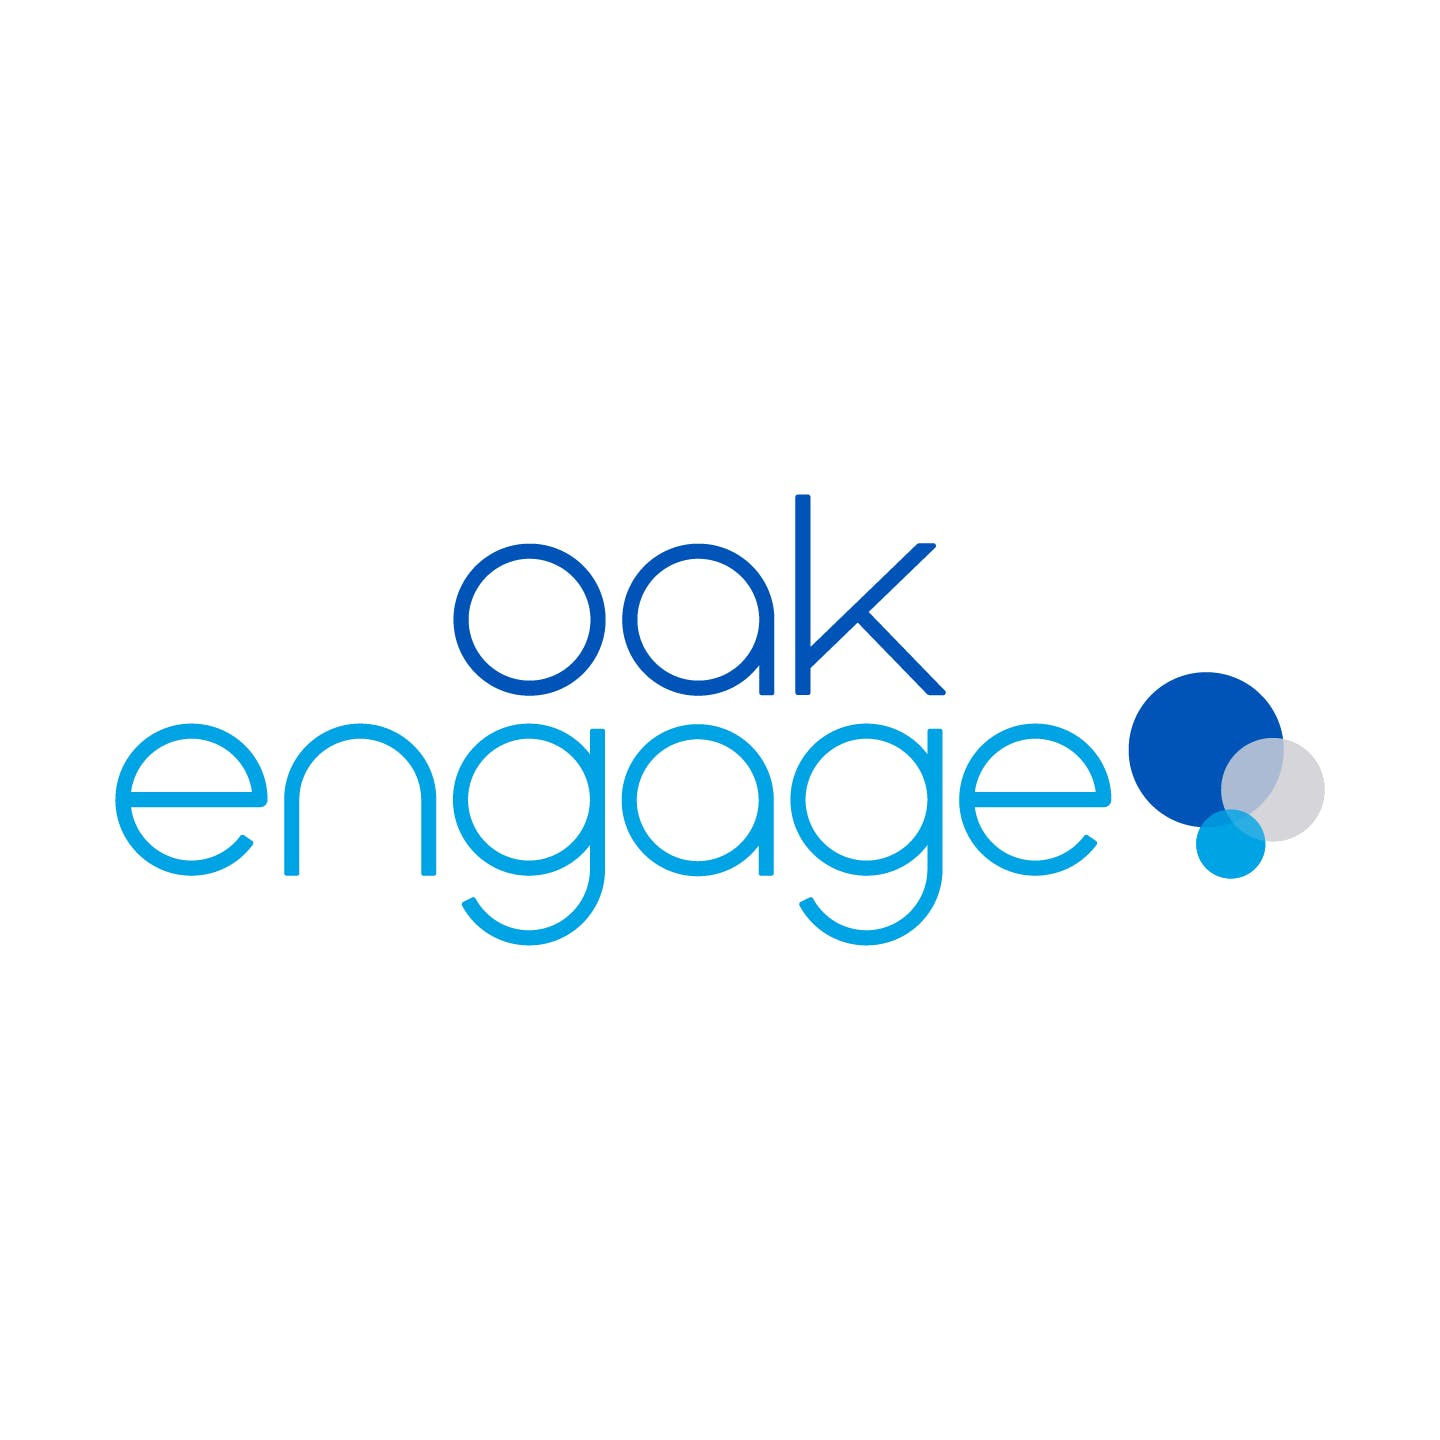 Oak Engage